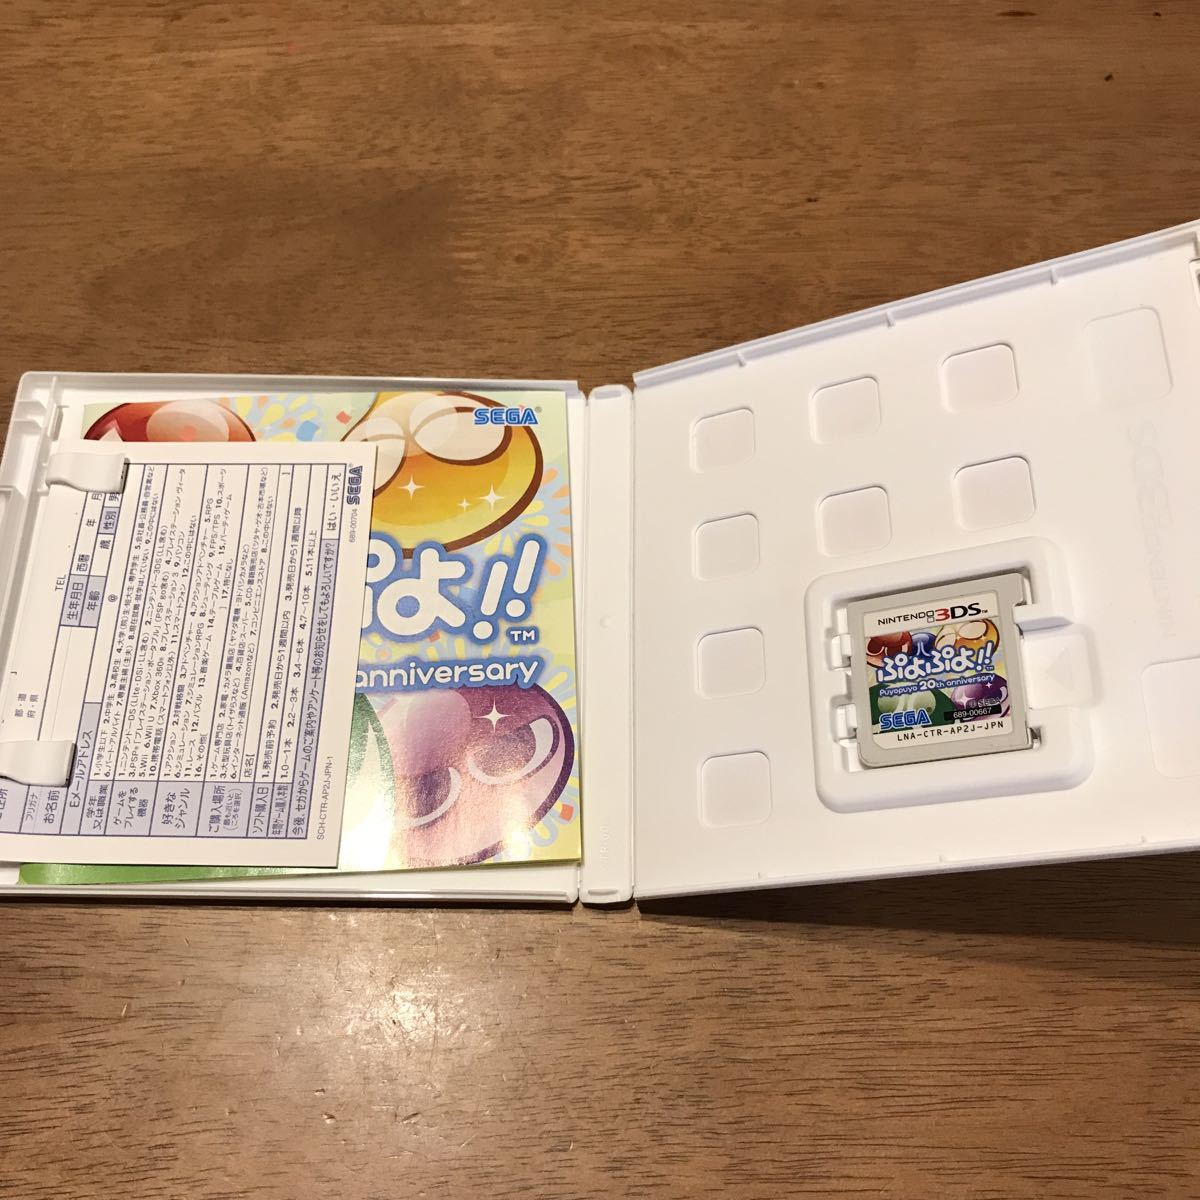 ニュースーパーマリオブラザーズ2 ぷよぷよ20th anniversary セット　3DSソフト 